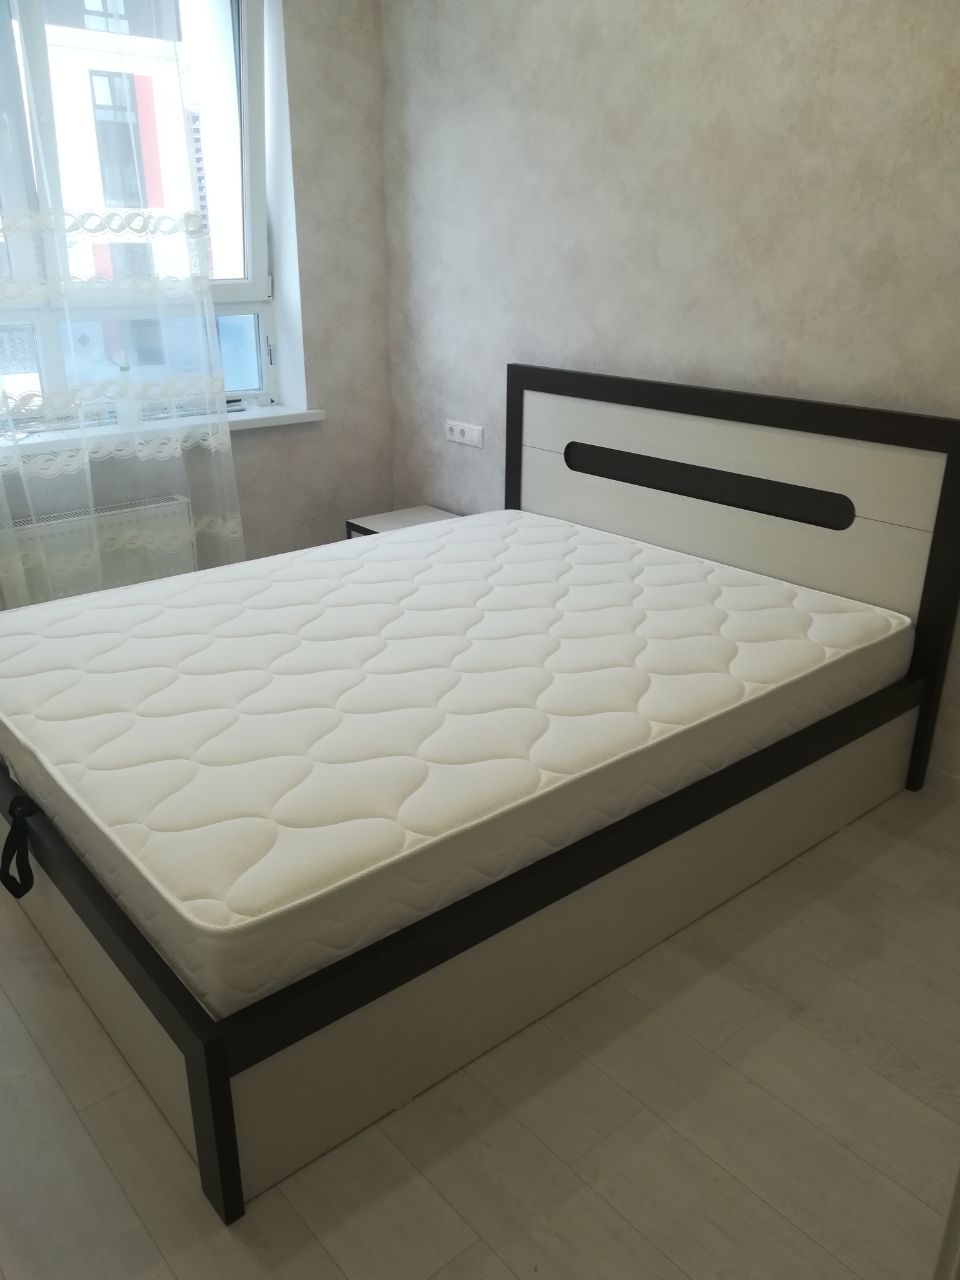 Односпальная кровать "Альба"  90 х 200 с подъемным механизмом цвет бодега